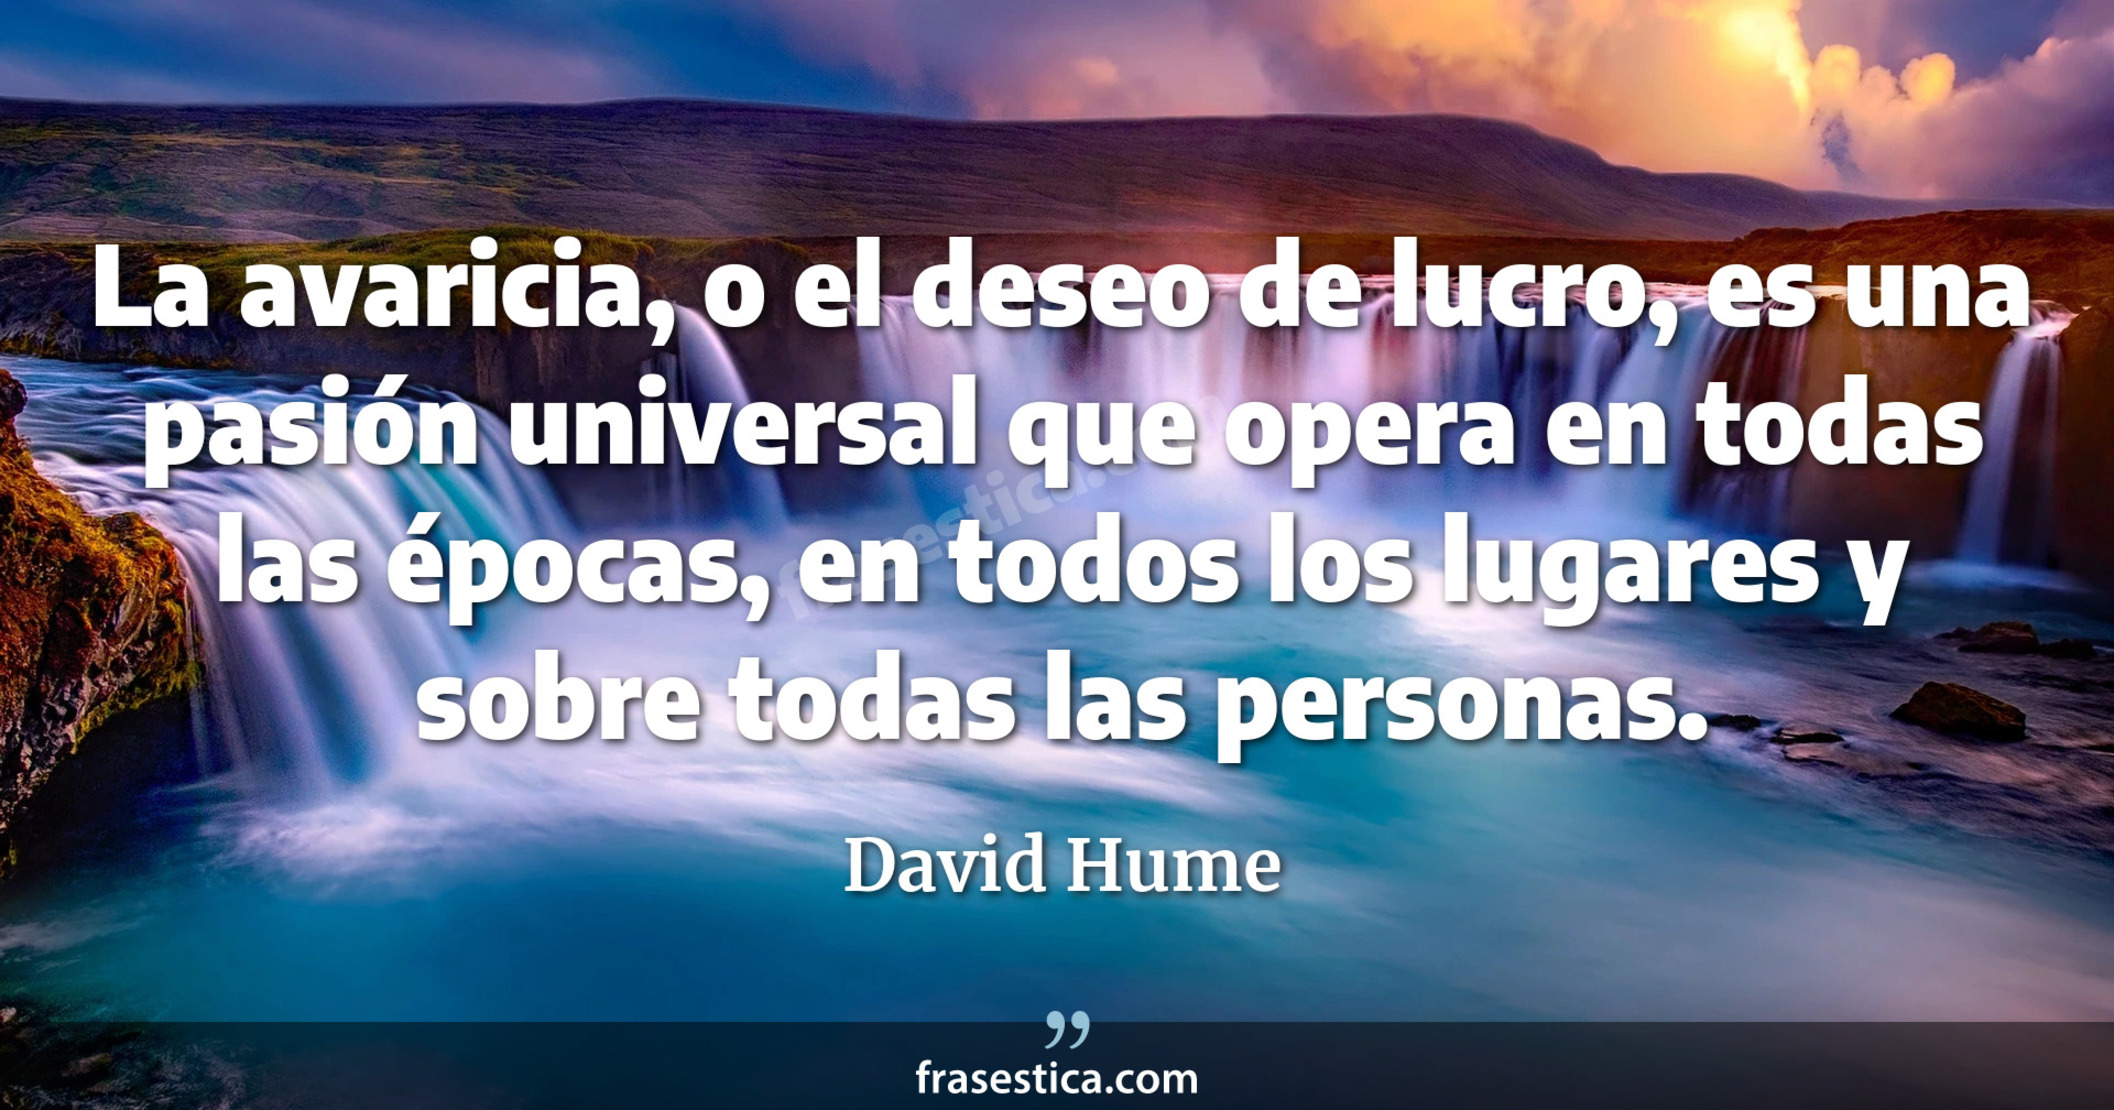 La avaricia, o el deseo de lucro, es una pasión universal que opera en todas las épocas, en todos los lugares y sobre todas las personas. - David Hume